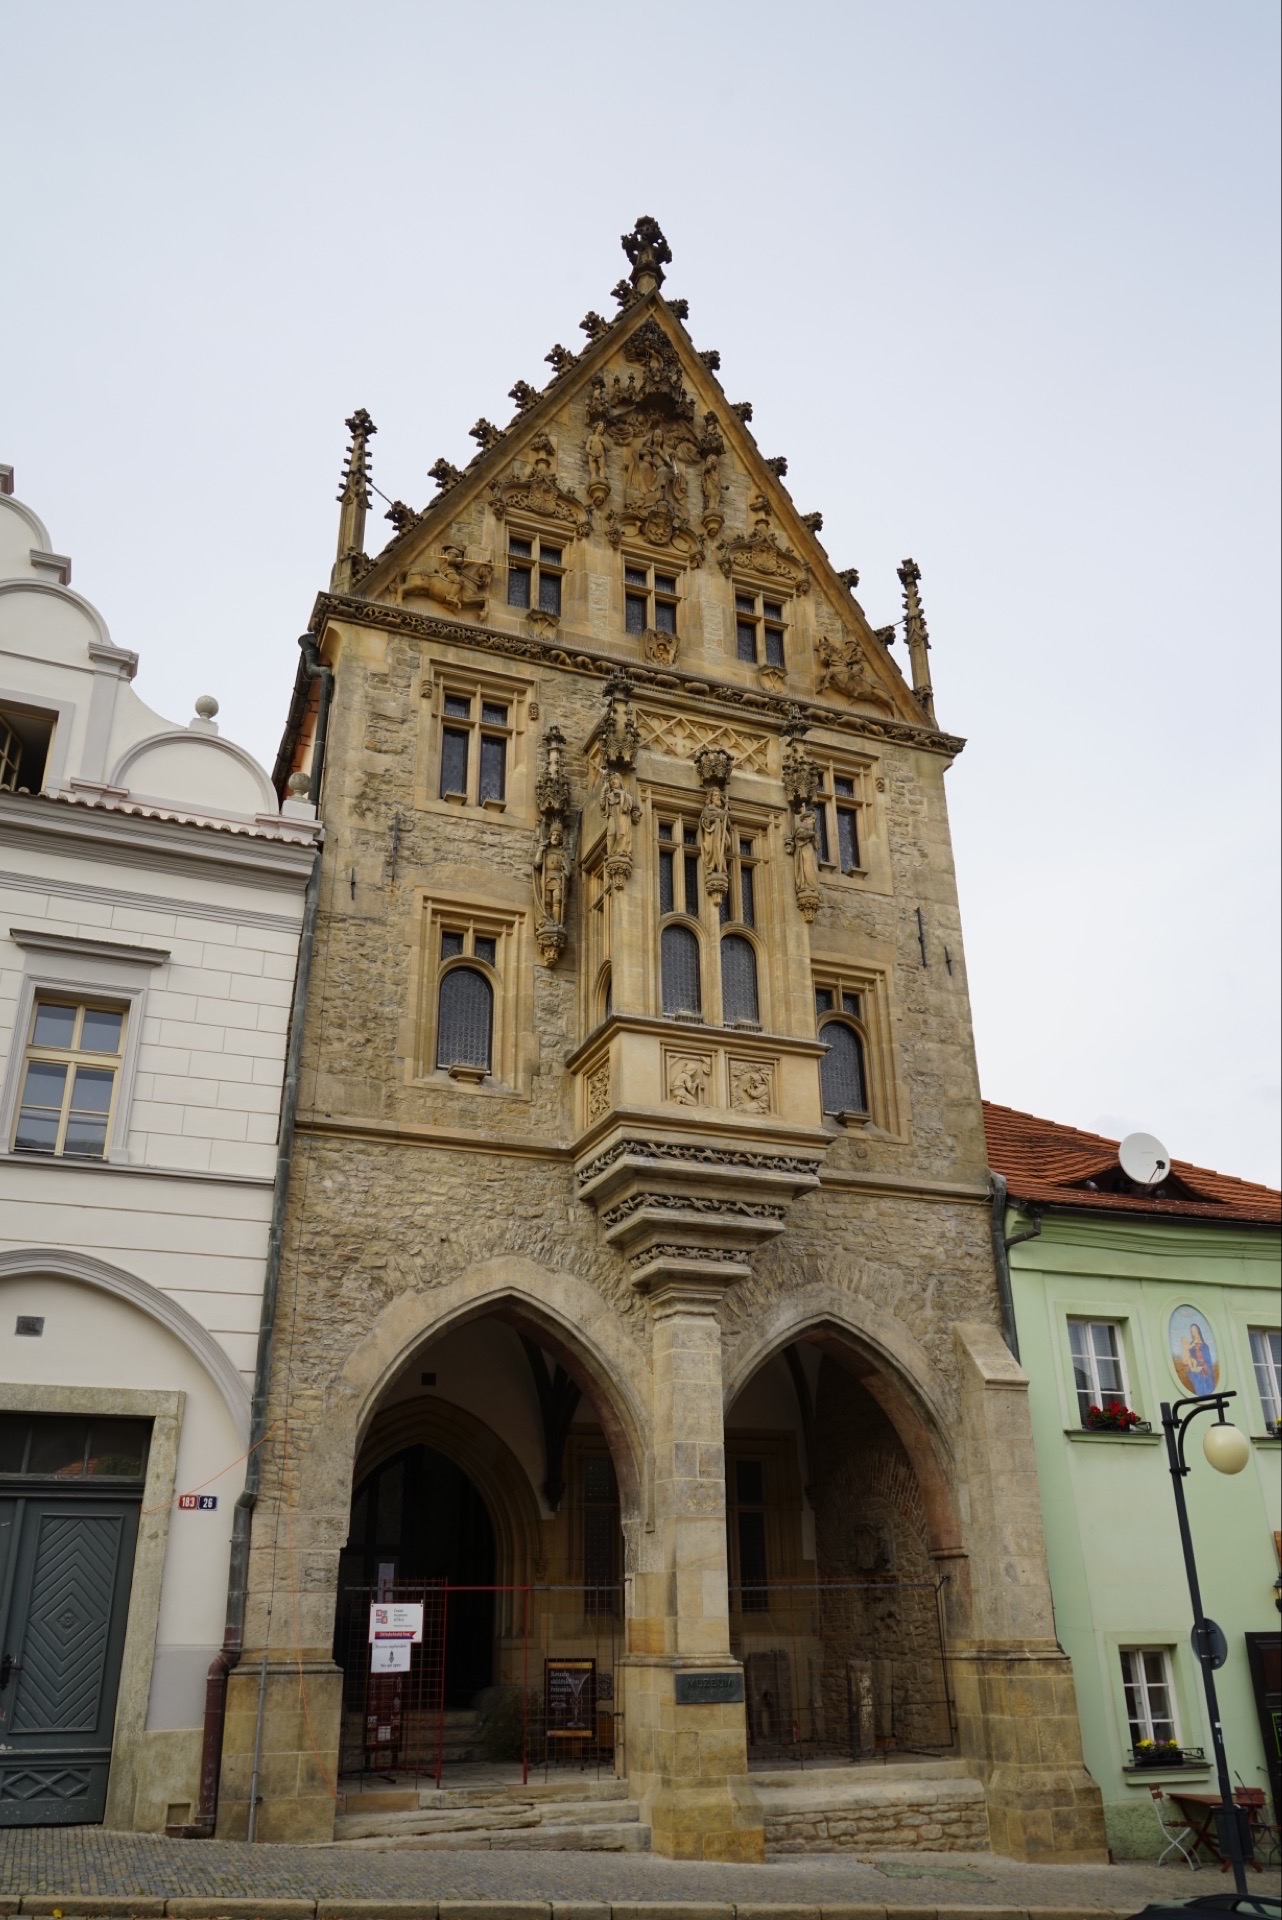 库特纳霍拉(Kutná Hora)， 常被称为“KH小镇”，距布拉格约60公里，坐火车1小时即到。公